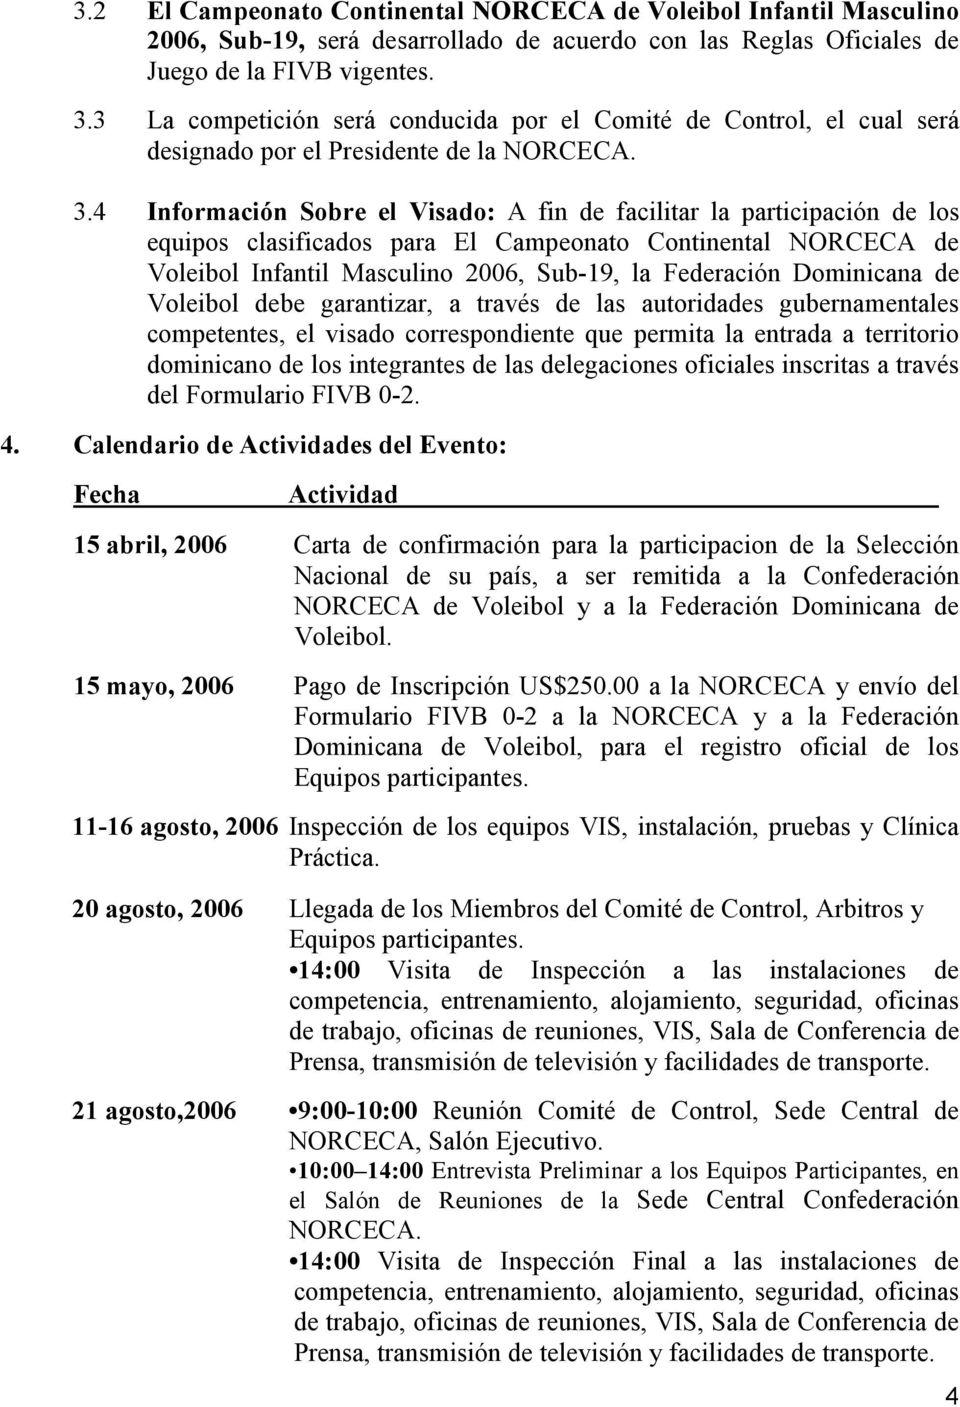 4 Información Sobre el Visado: A fin de facilitar la participación de los equipos clasificados para El Campeonato Continental NORCECA de Voleibol Infantil Masculino 2006, Sub-19, la Federación